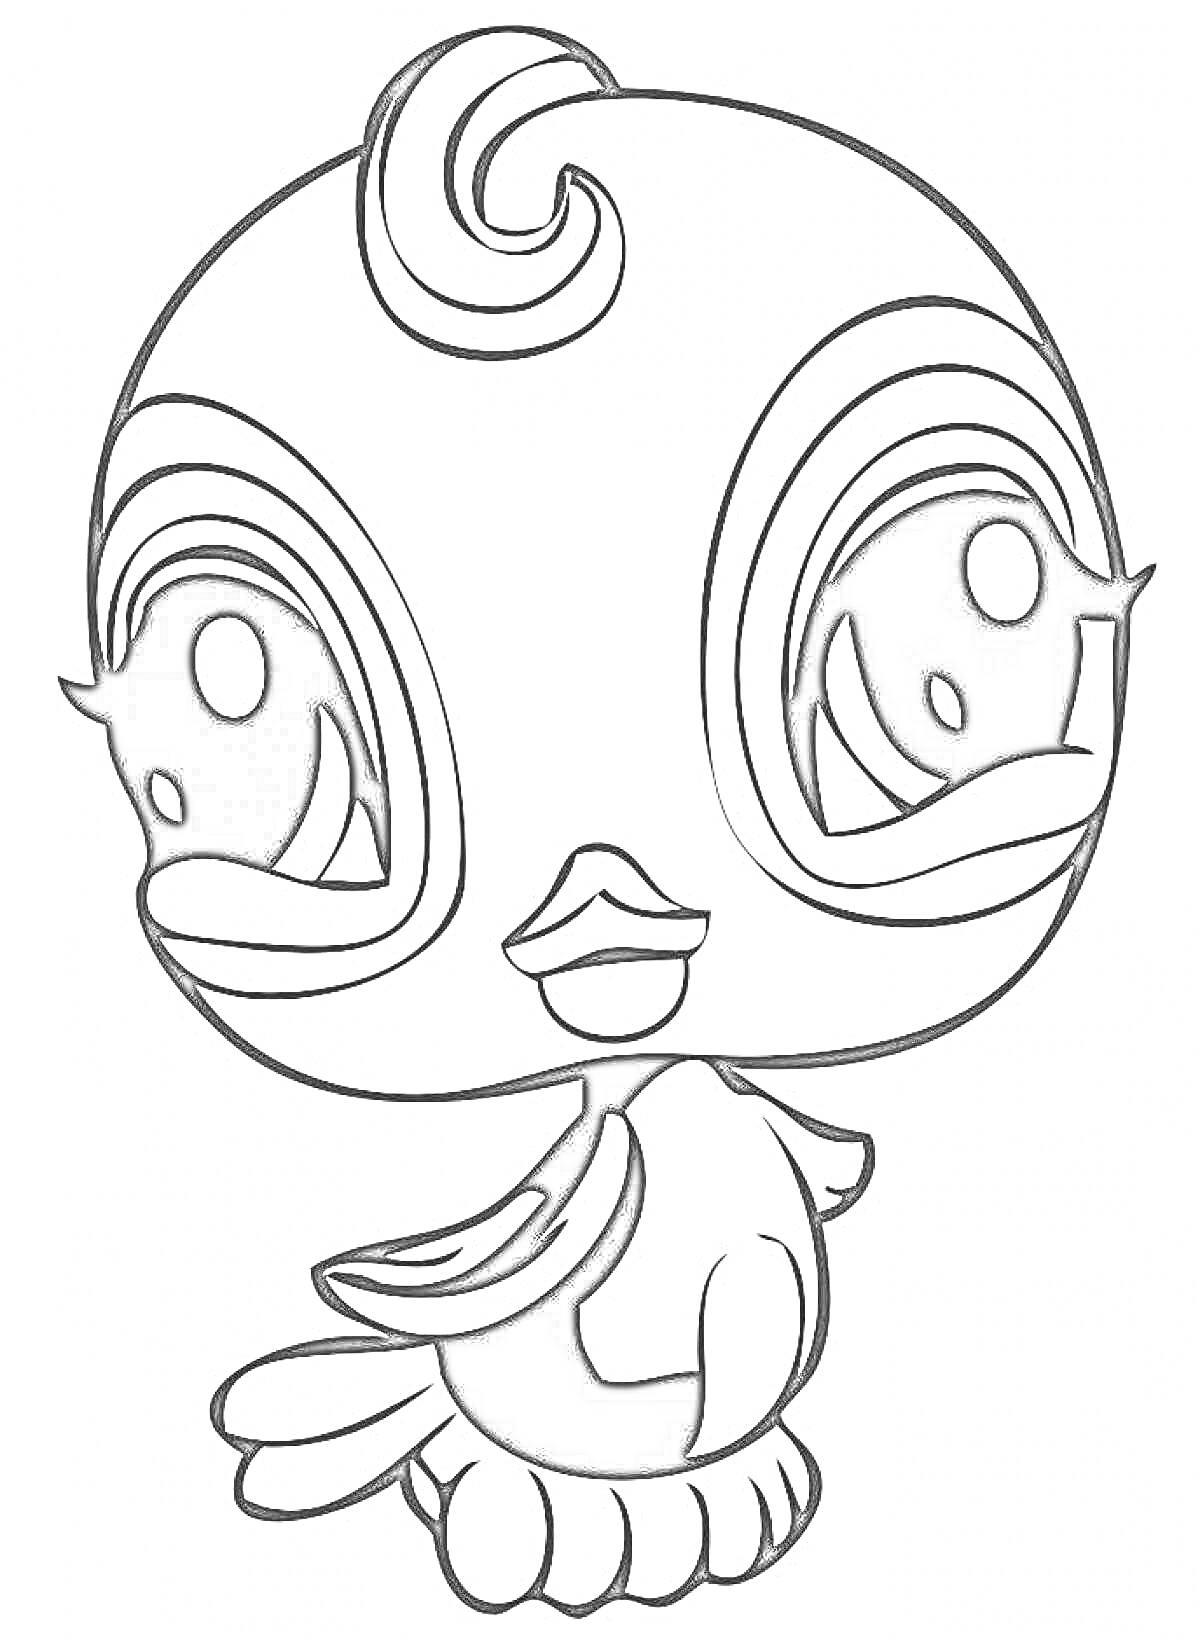 Раскраска Птичка из Литтл Пет Шоп с большими глазами и завитком на голове